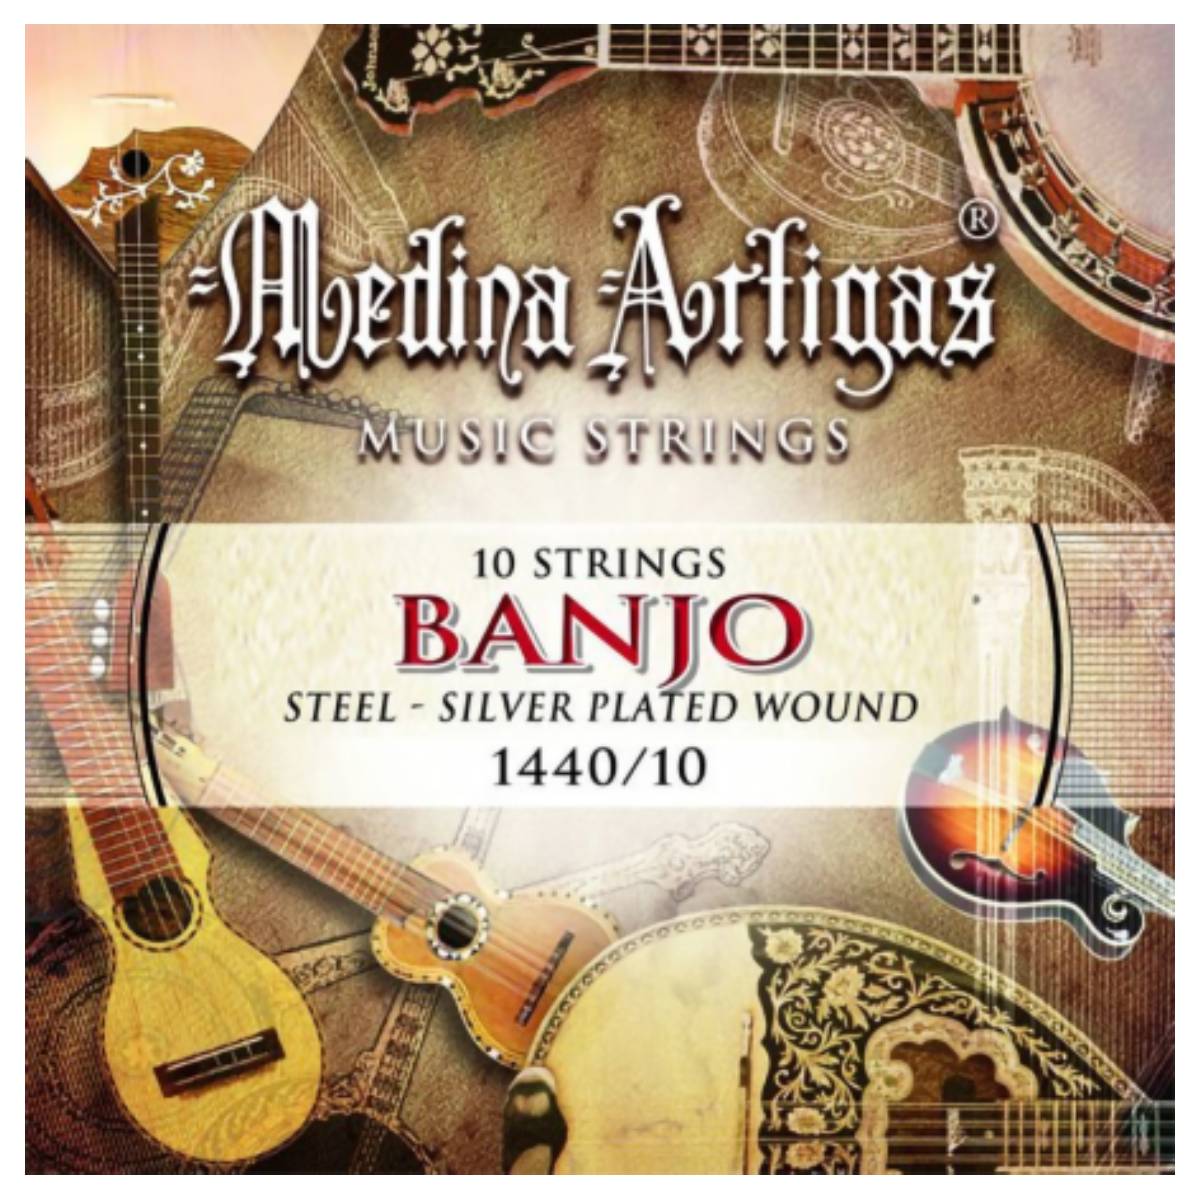 Encordado banjo 10c Medina Artigas 1440-10